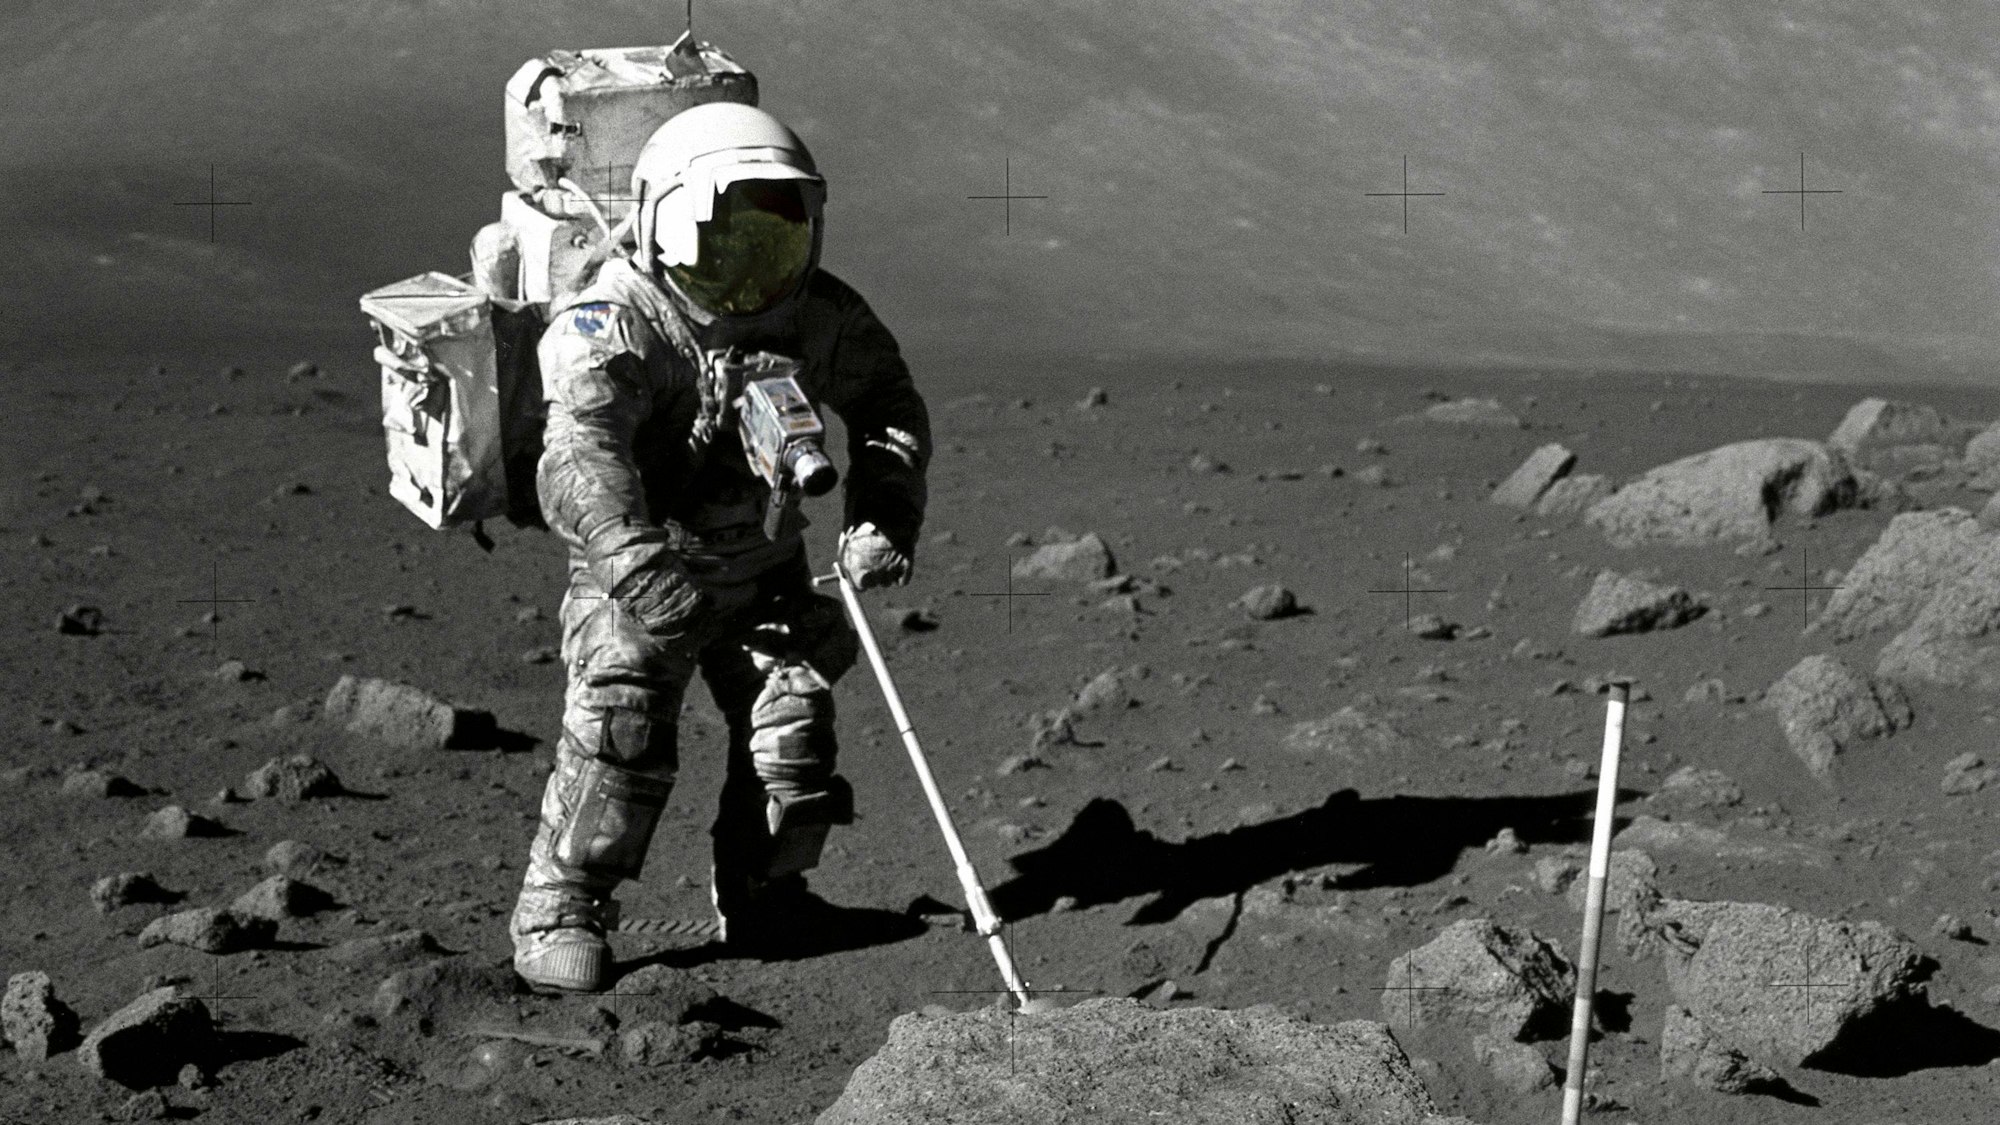 HANDOUT - 12.12.1972, ---, Mond: Der Apollo-17-Astronaut Harrison Schmitt verwendet eine verstellbare Schaufel zur Entnahme von Mondproben. Forschende haben anhand der aktuellen Proben ein neues Entstehungsdatum für den Mond ermittelt. (zu dpa: «Forschungsteam untersucht Gesteine») Foto: Nasa/ Johnson Space Center/Nasa/dpa - Honorarfrei nur für Bezieher des Dienstes dpa-Nachrichten für Kinder +++ dpa-Nachrichten für Kinder +++